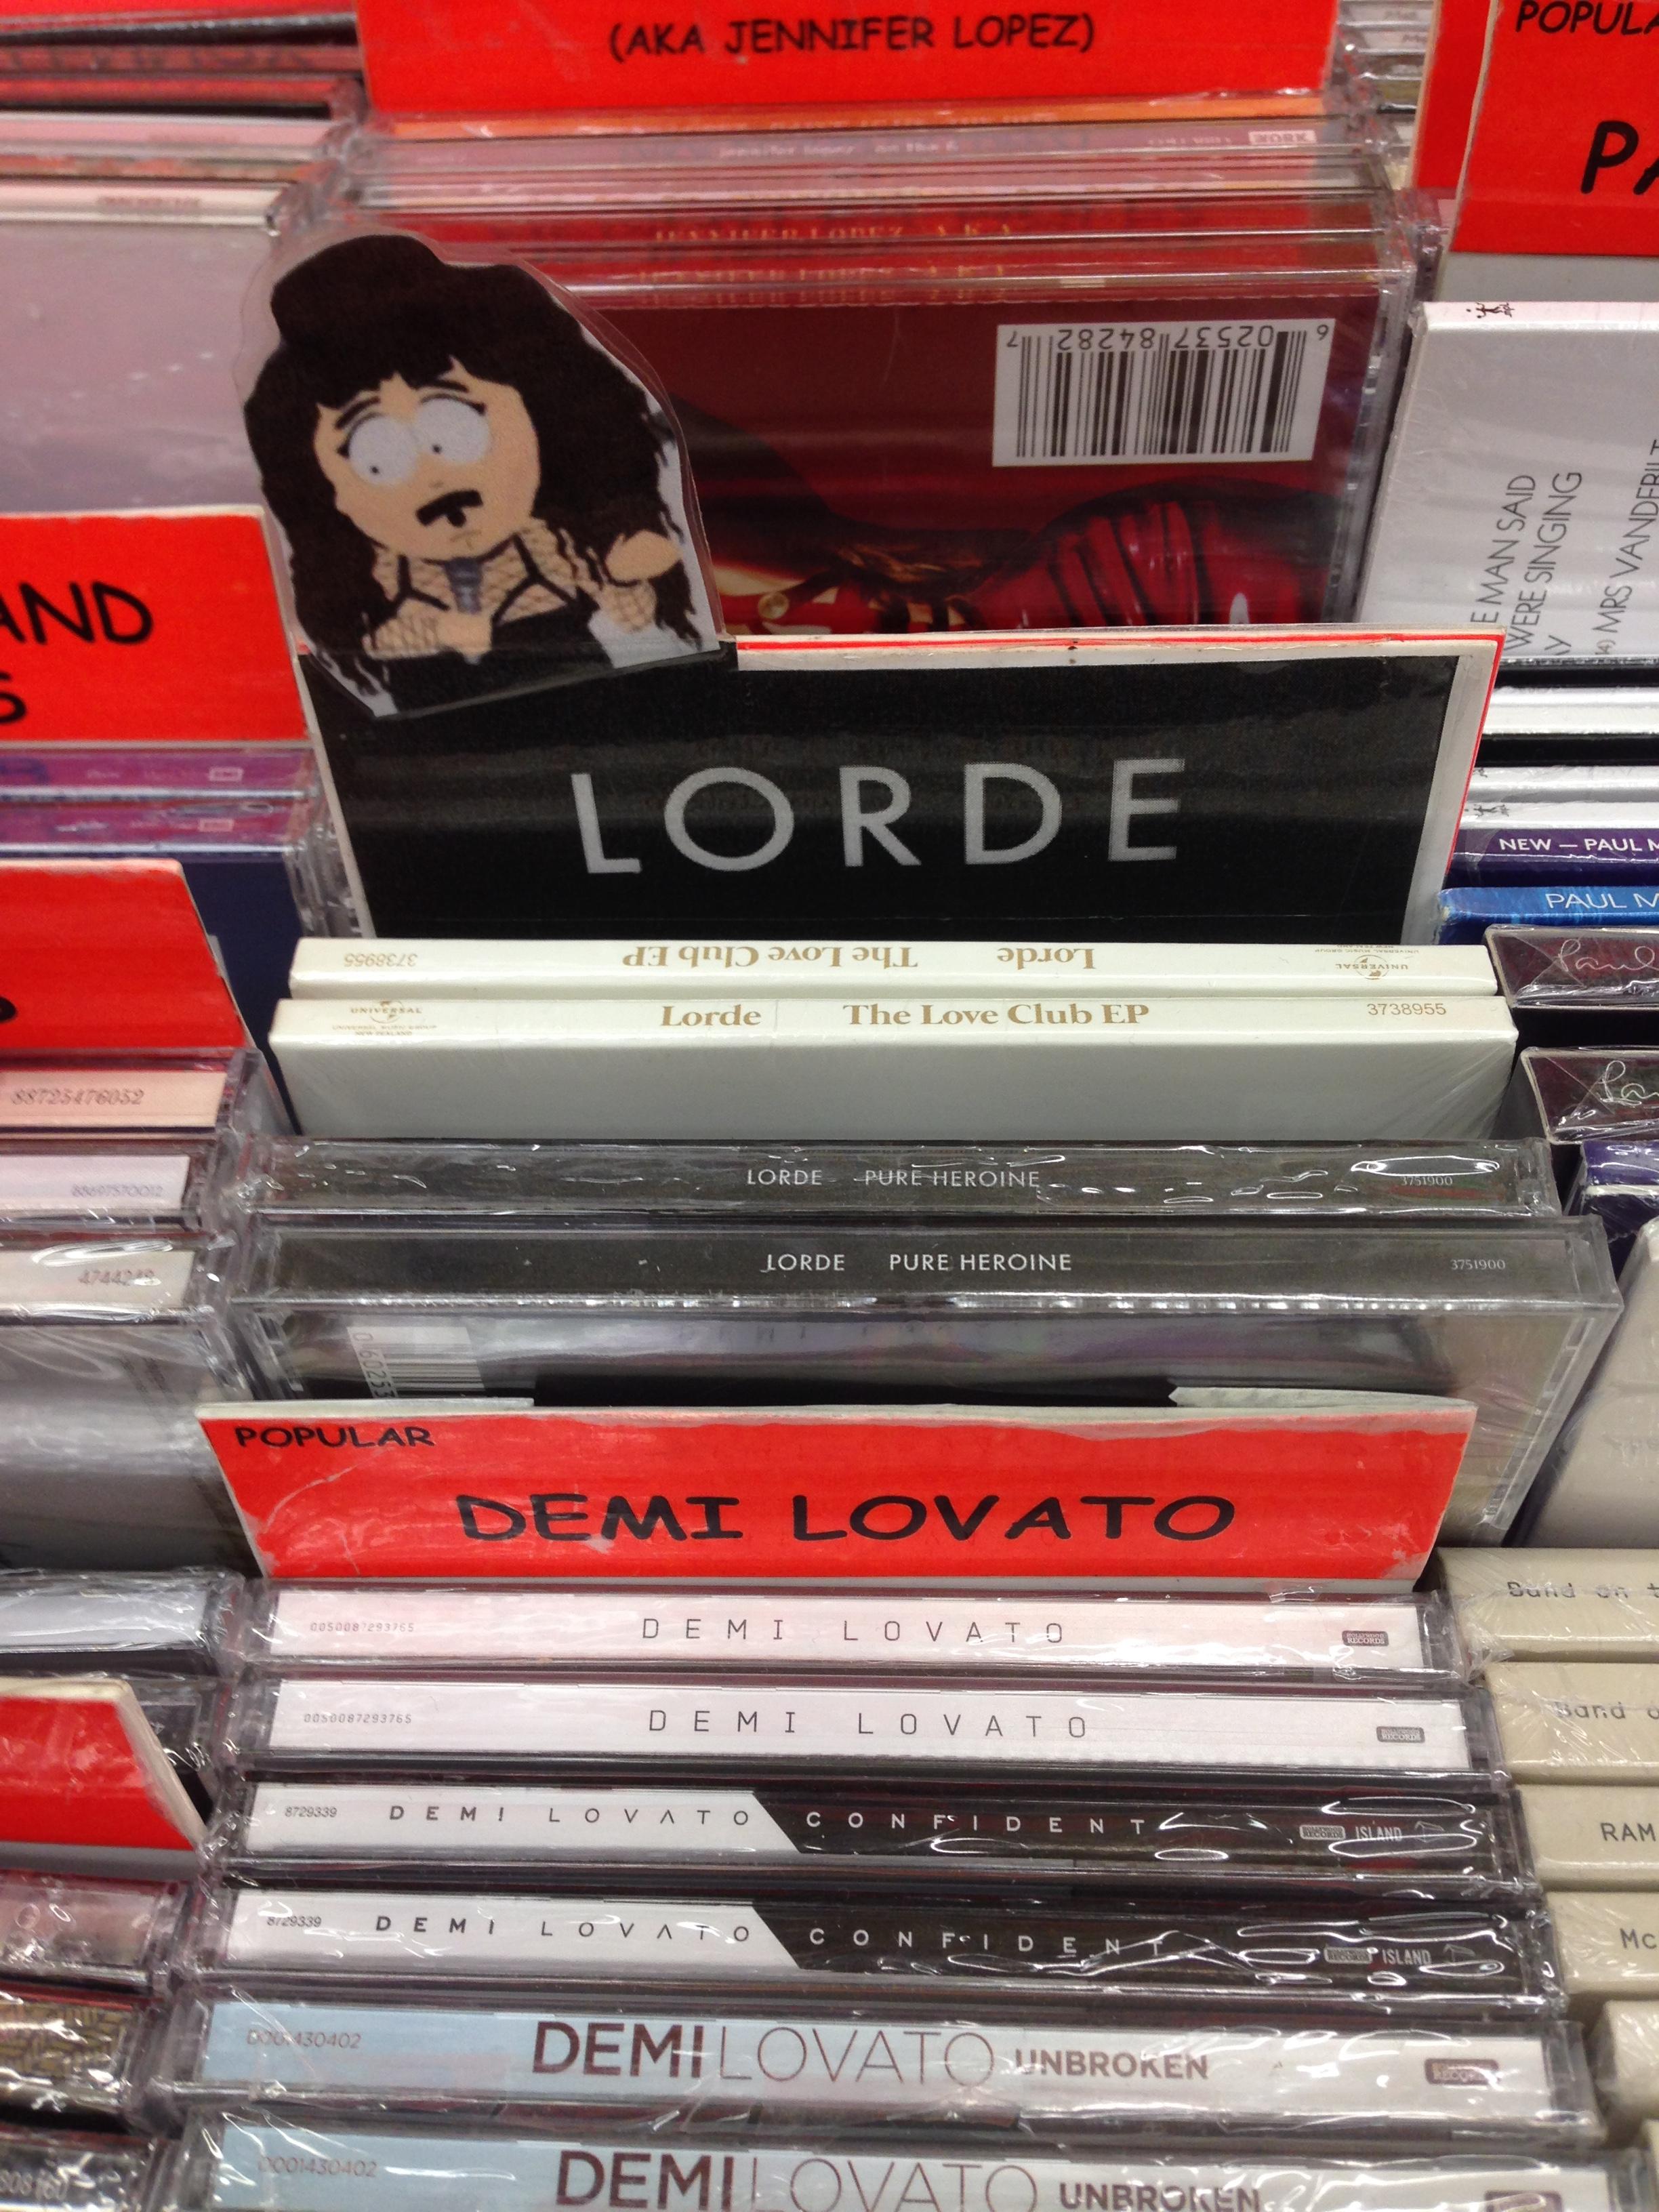 memes - book - Aka Jennifer Lopezo 065 And Lorde Logo B Demi Lovato Demi Lovato Demi Lovatospronet Demi Lovato Una